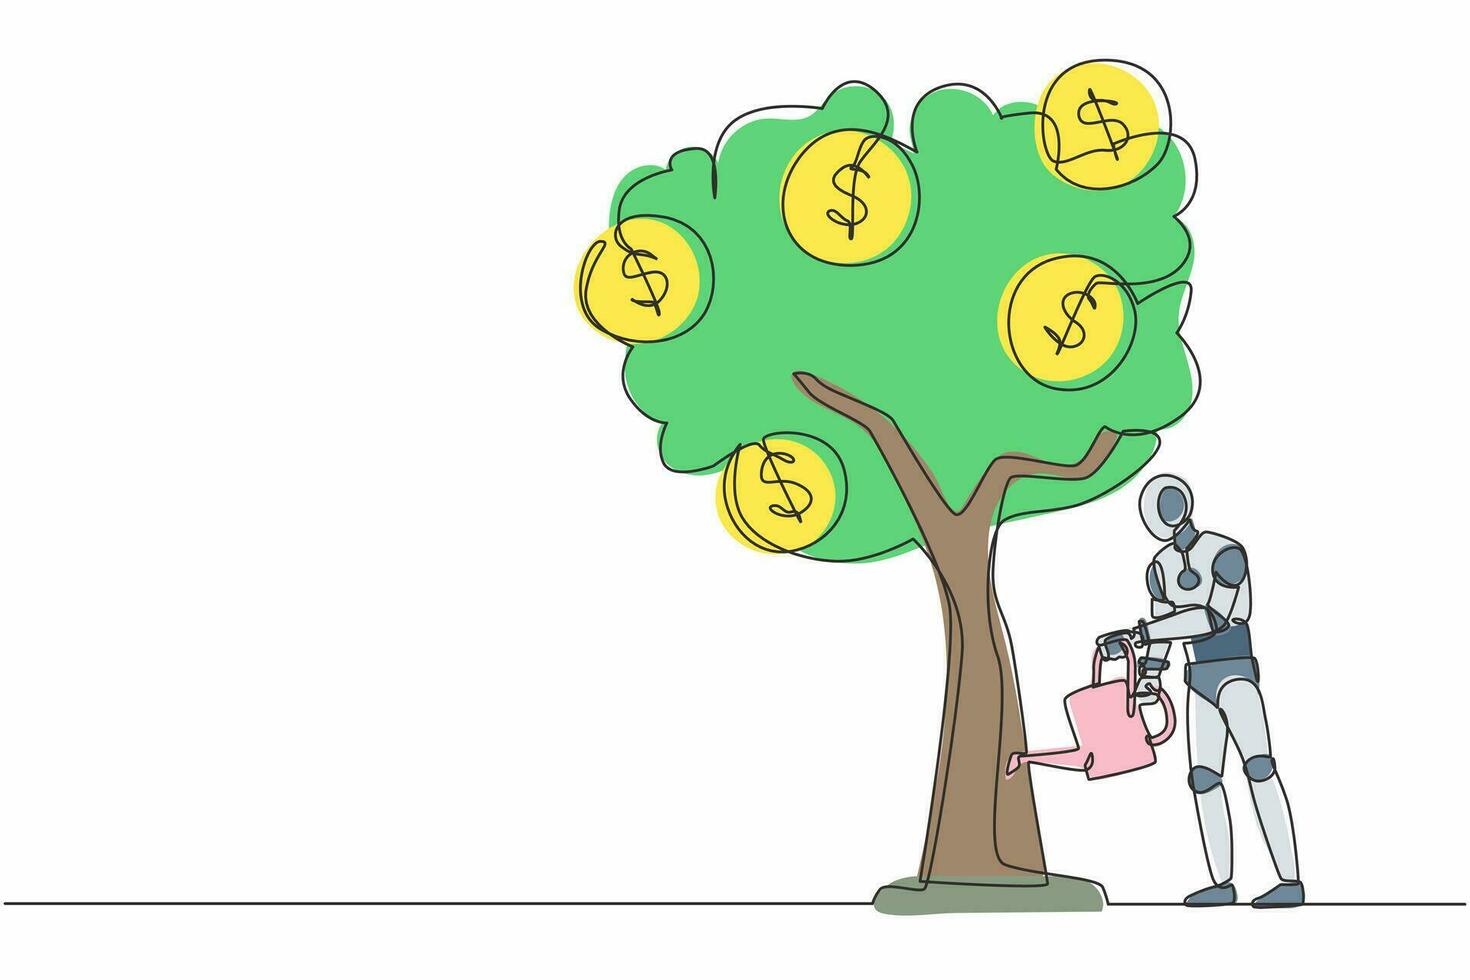 árbol de riego de robot de dibujo de línea continua única con símbolo de dólar de monedas. crecimiento de las ganancias inteligencia artificial robótica. tecnología electrónica. ilustración de vector de diseño gráfico de dibujo de una línea